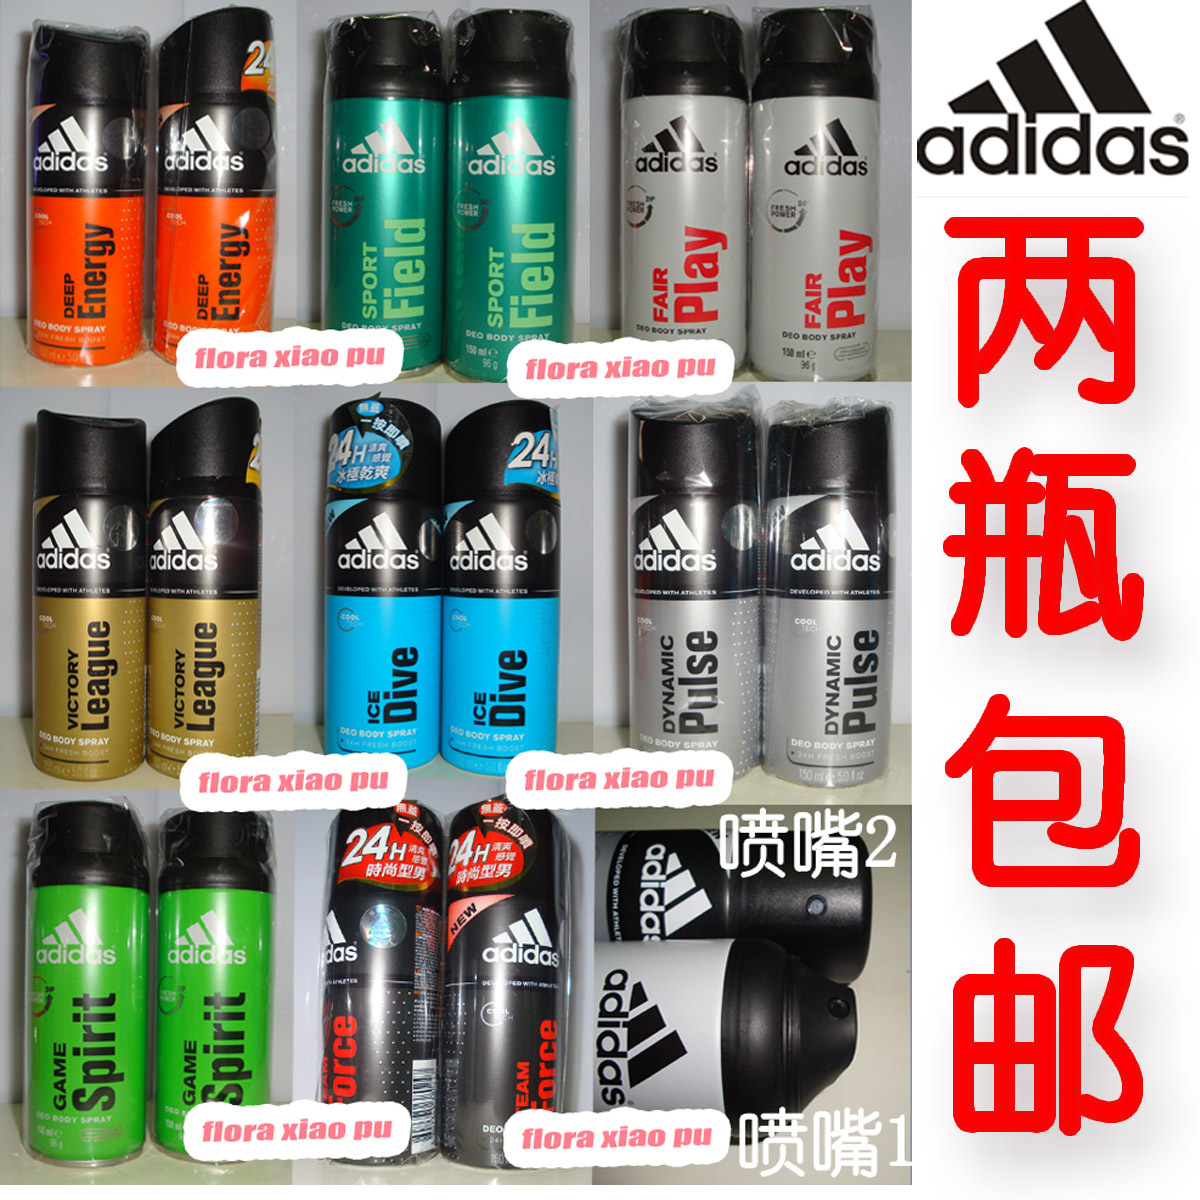 2件包邮！Adidas阿迪达斯男士 香水香体止汗喷雾 8款 150ml